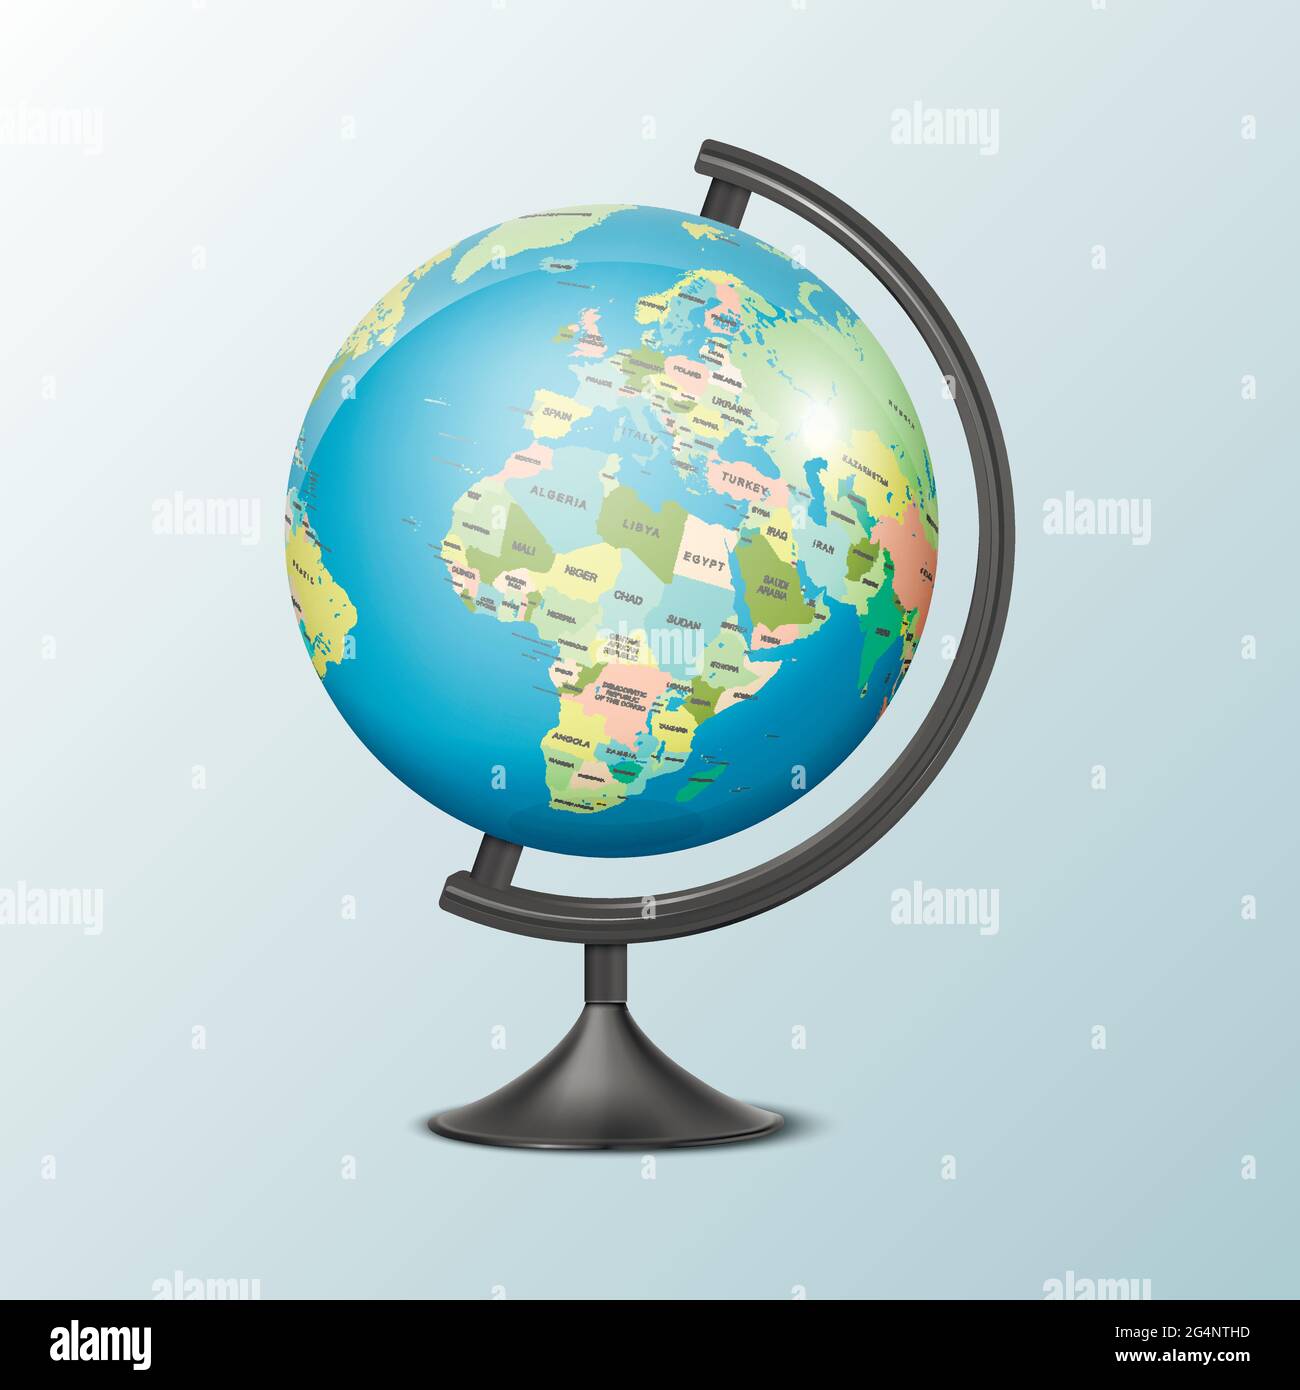 Vektor realistische 3d Globus des Planeten Erde mit politischen